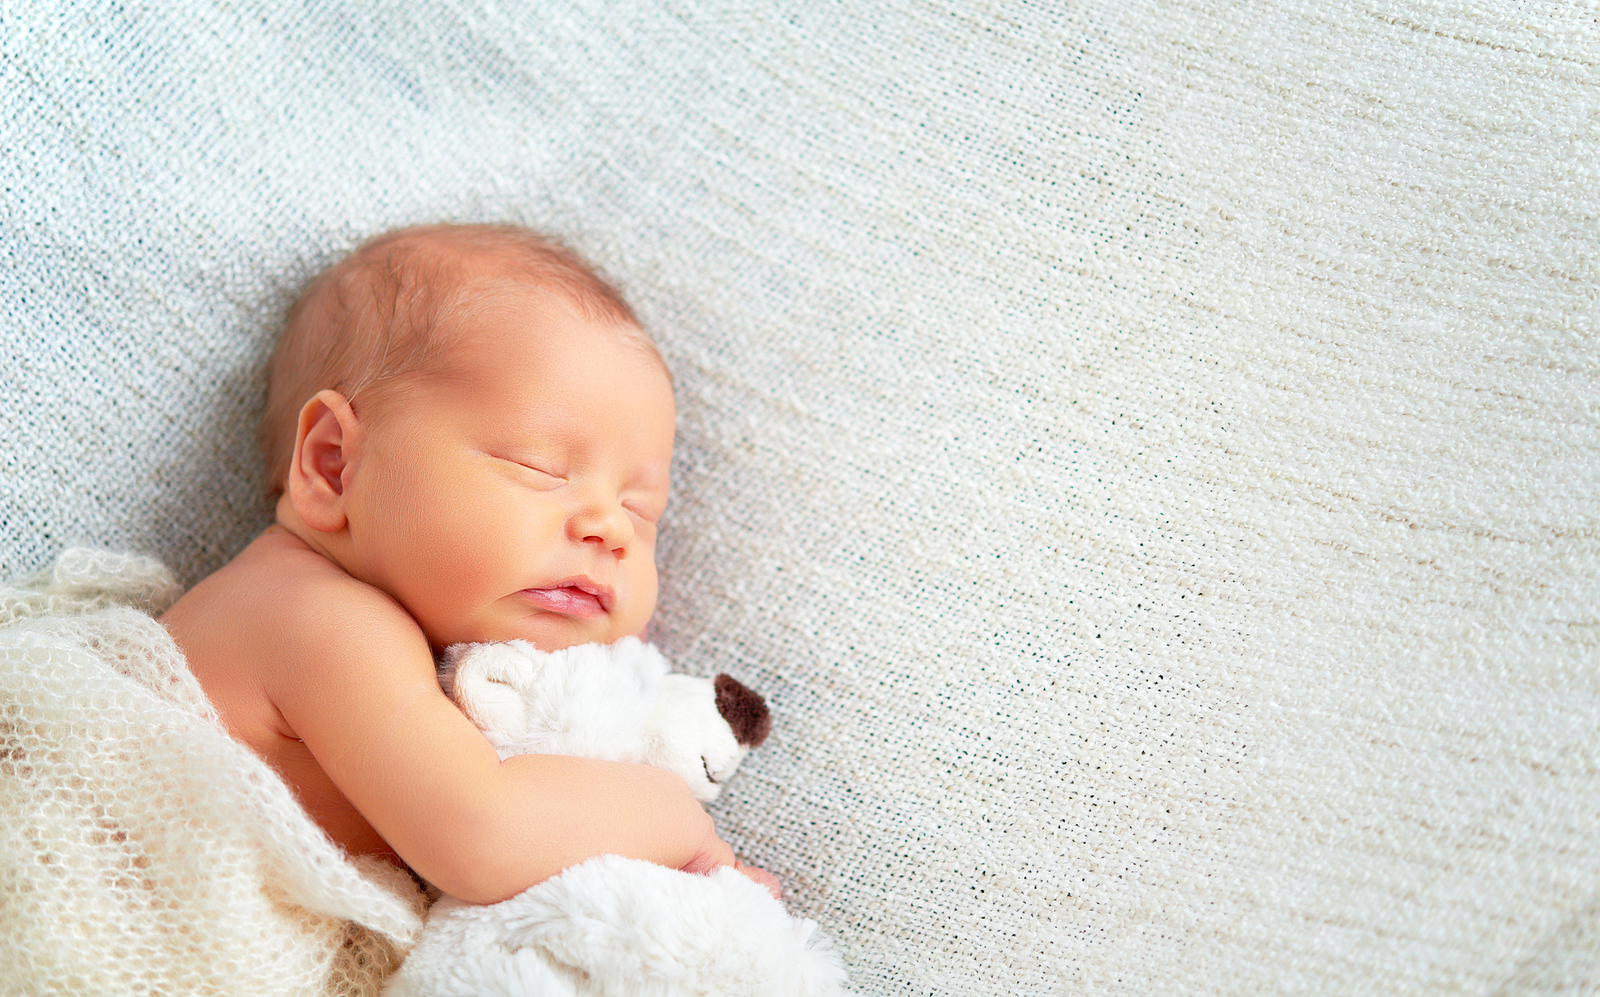 newborn baby photoshoot dress